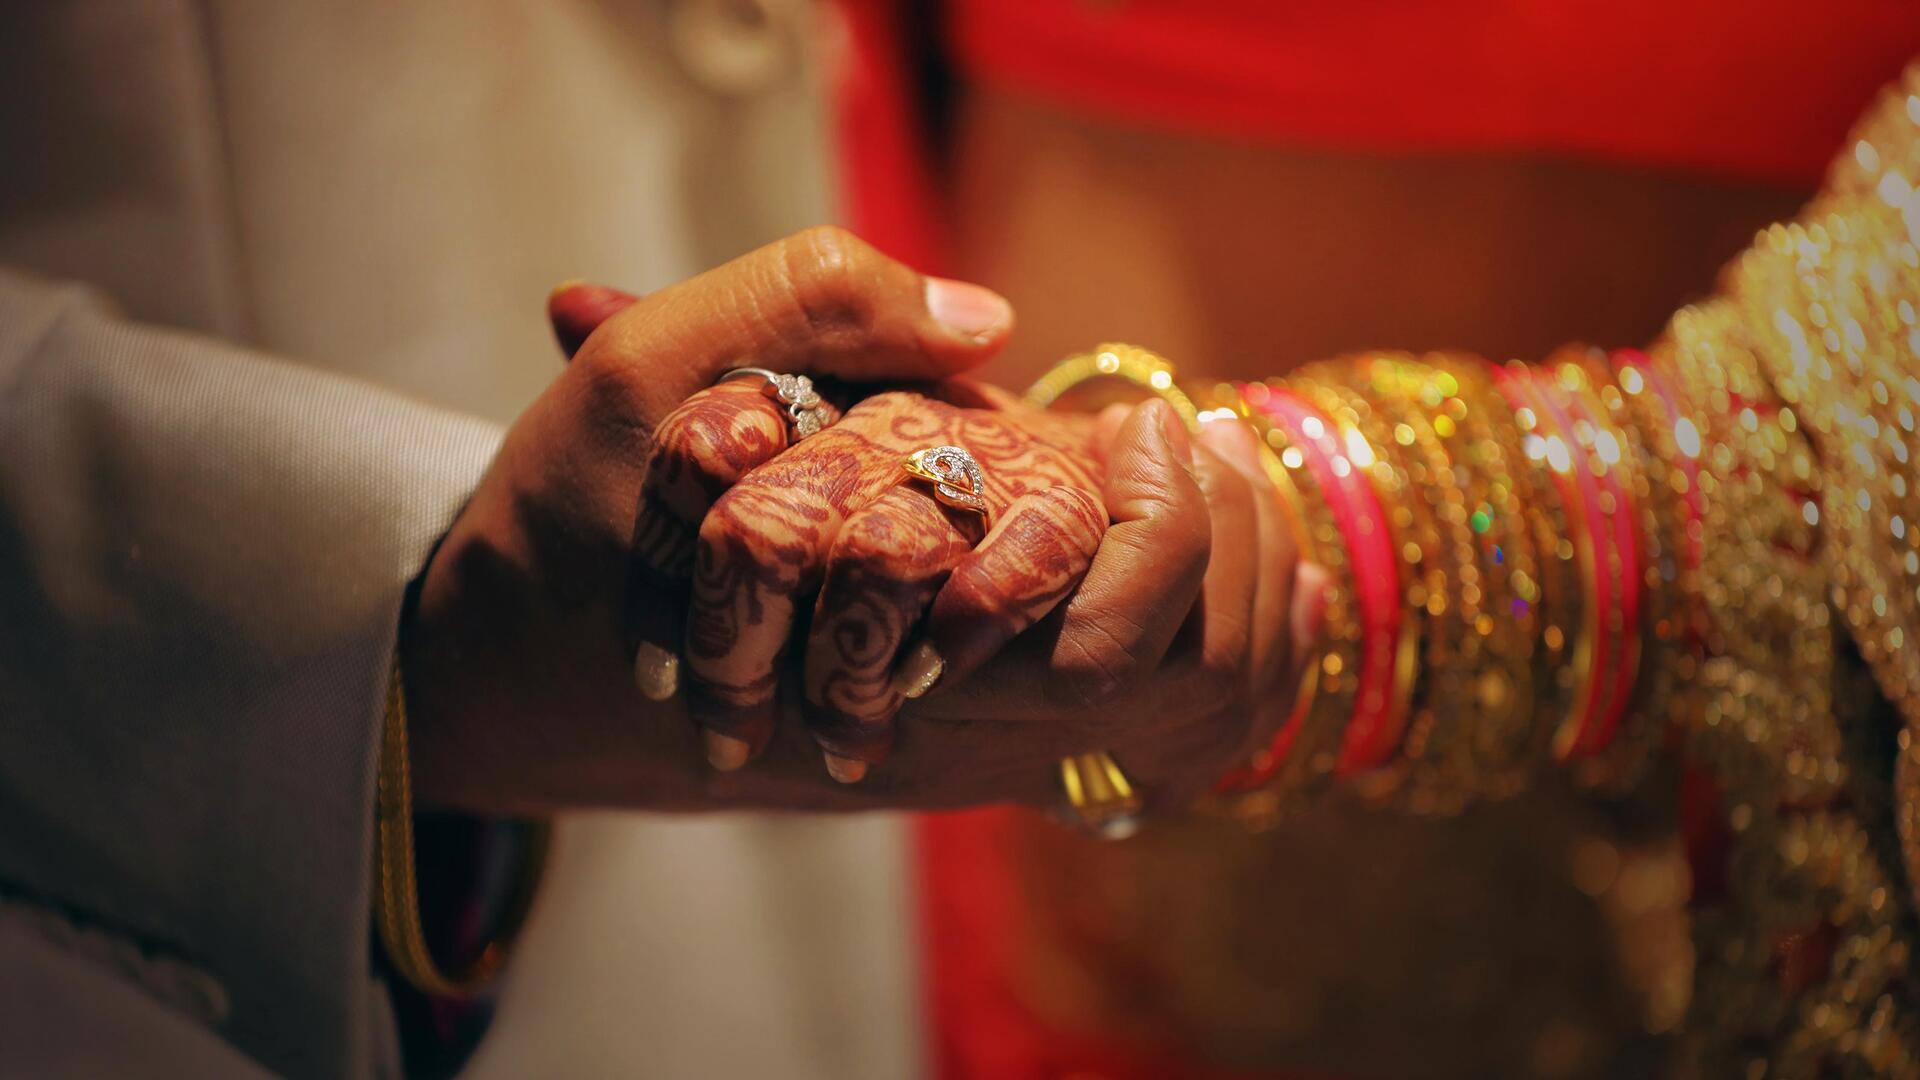 असम: सरकारी कर्मचारी दूसरी शादी नहीं कर सकेंगे, मुख्यमंत्री बोले- धर्म अनुमति देता है, सरकार नहीं